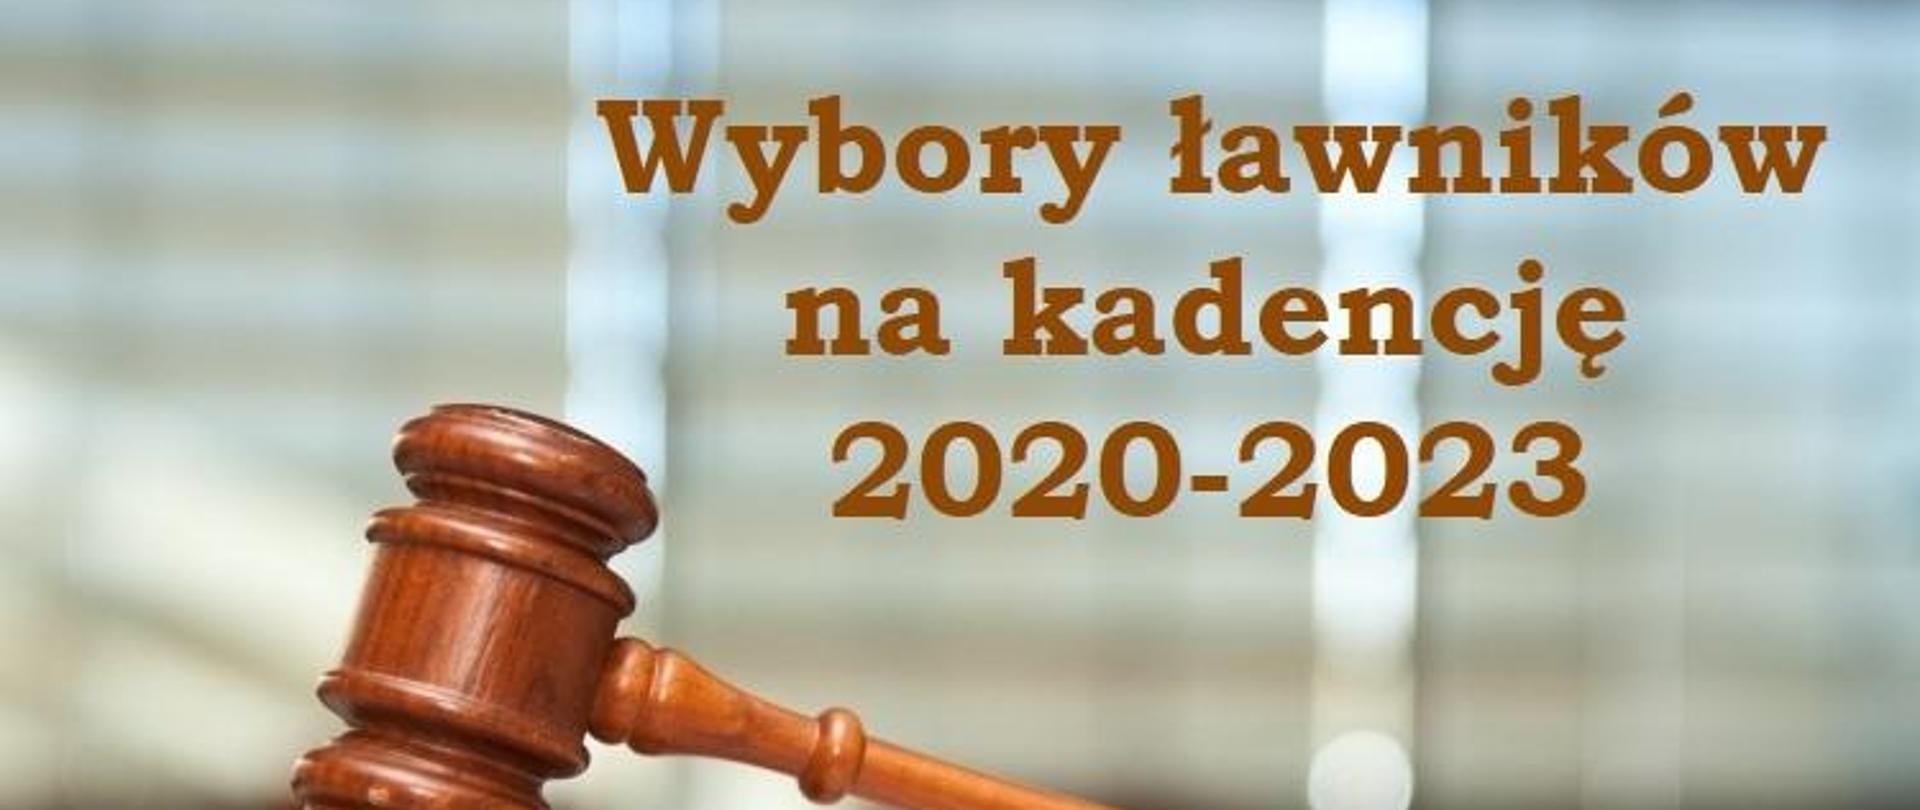 Wybory ławników na kadencje 2020 - 2023